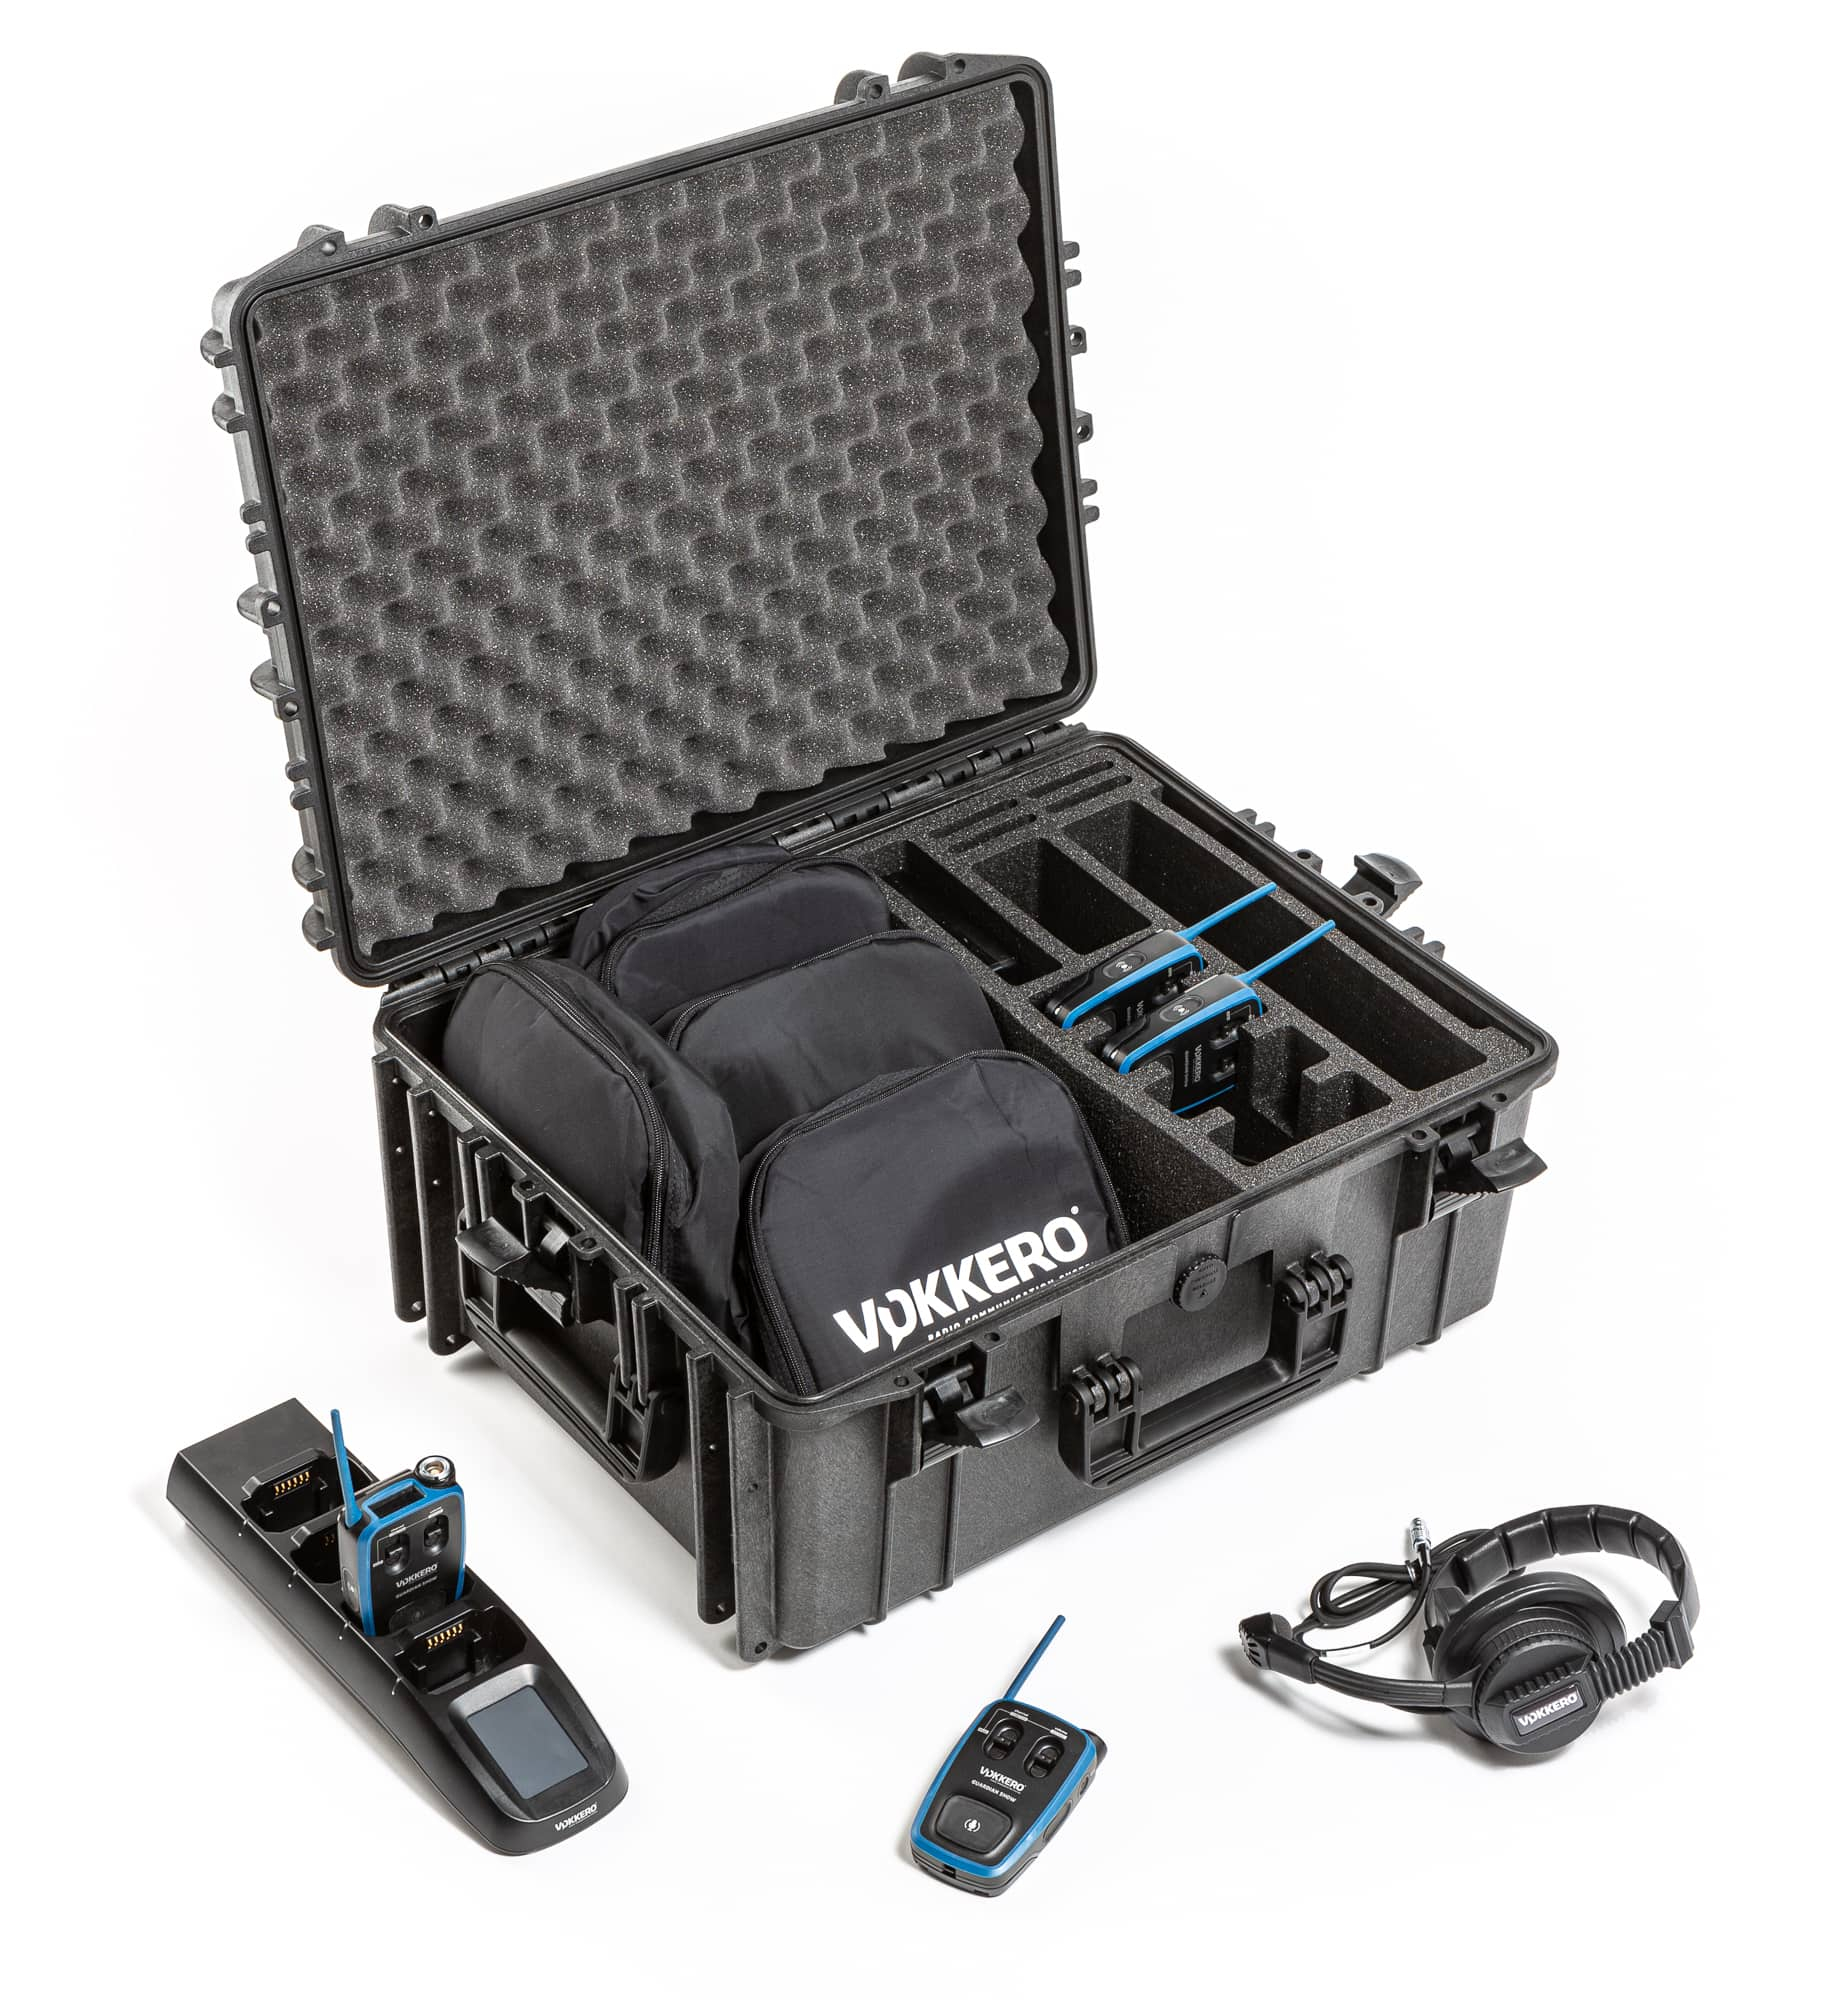 Full duplex intercom kit – Pro Audio wireless – 4 users